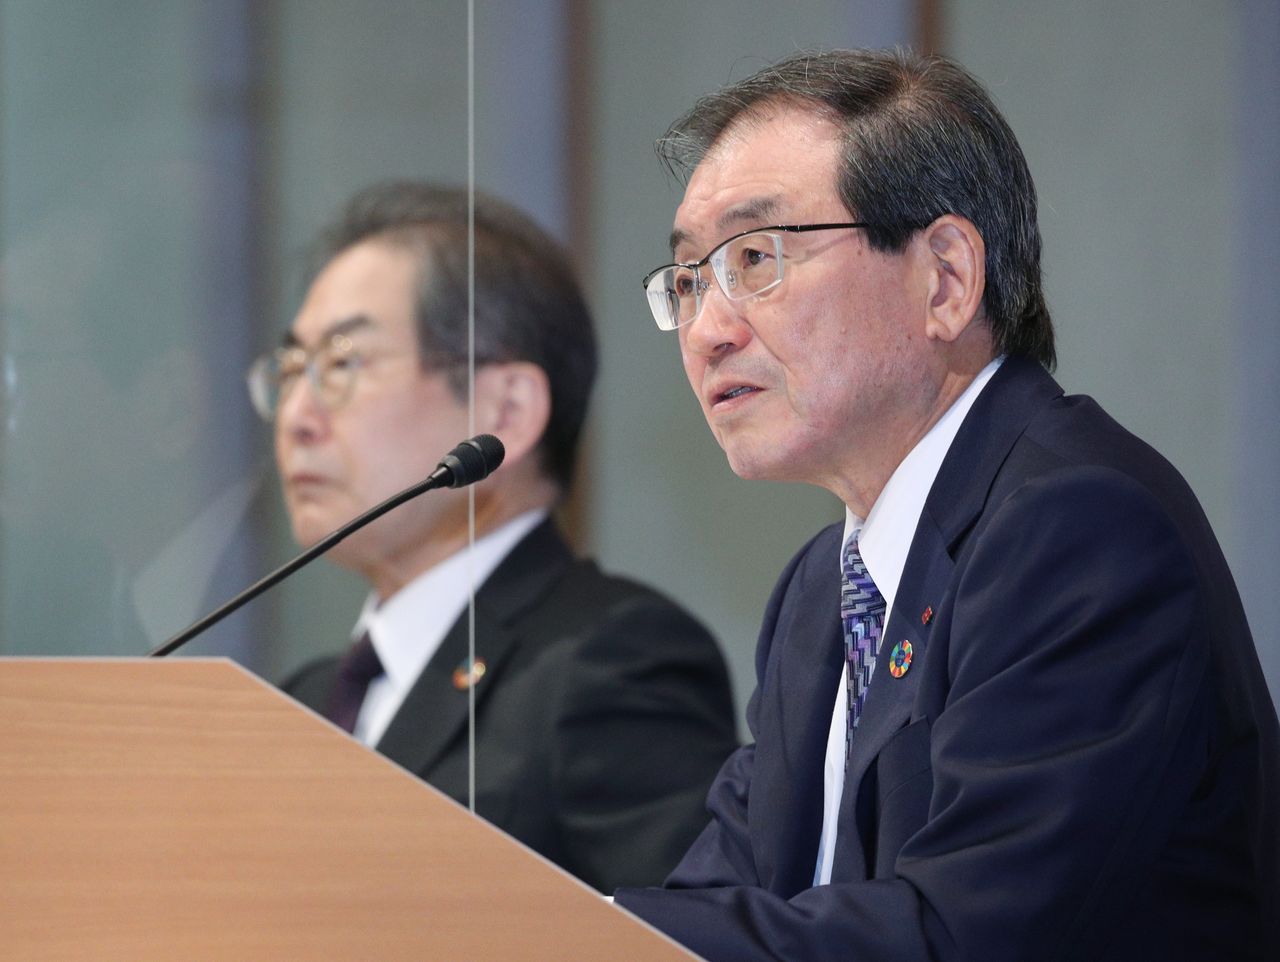 توكورا ماساكازو (في المقدمة)، والمقرر أن يكون الرئيس القادم لاتحاد الأعمال الياباني. التُقطت الصورة في طوكيو في العاشر من مايو/ آيار 2021، مع المدير العام لكيدانرين كوبوتا ماساكازو في الخلفية. جيجي برس.